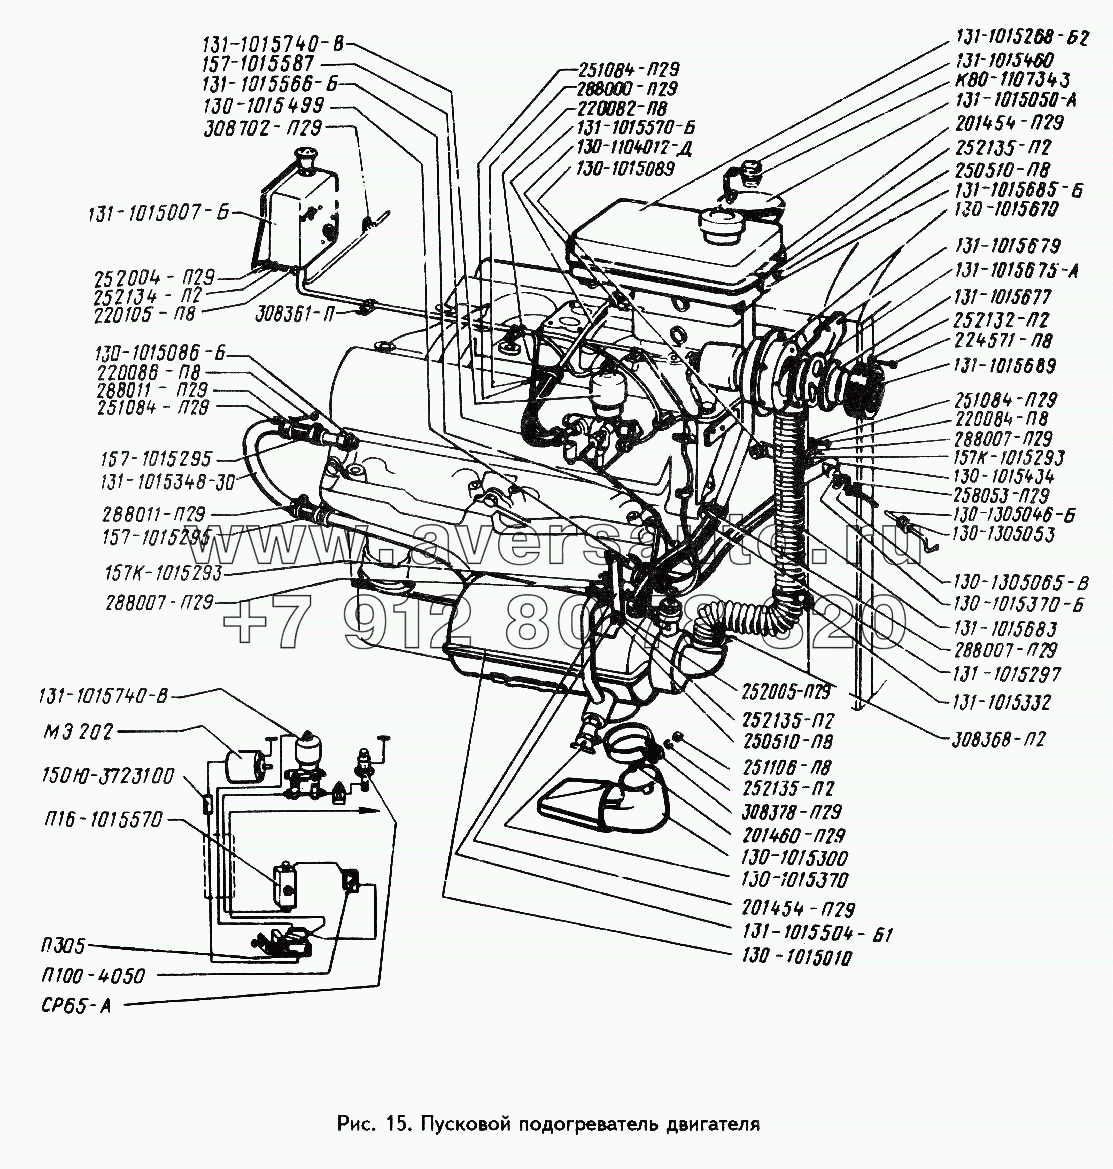 Пусковой подогреватель двигателя (Устанавливается по требованию заказчика)